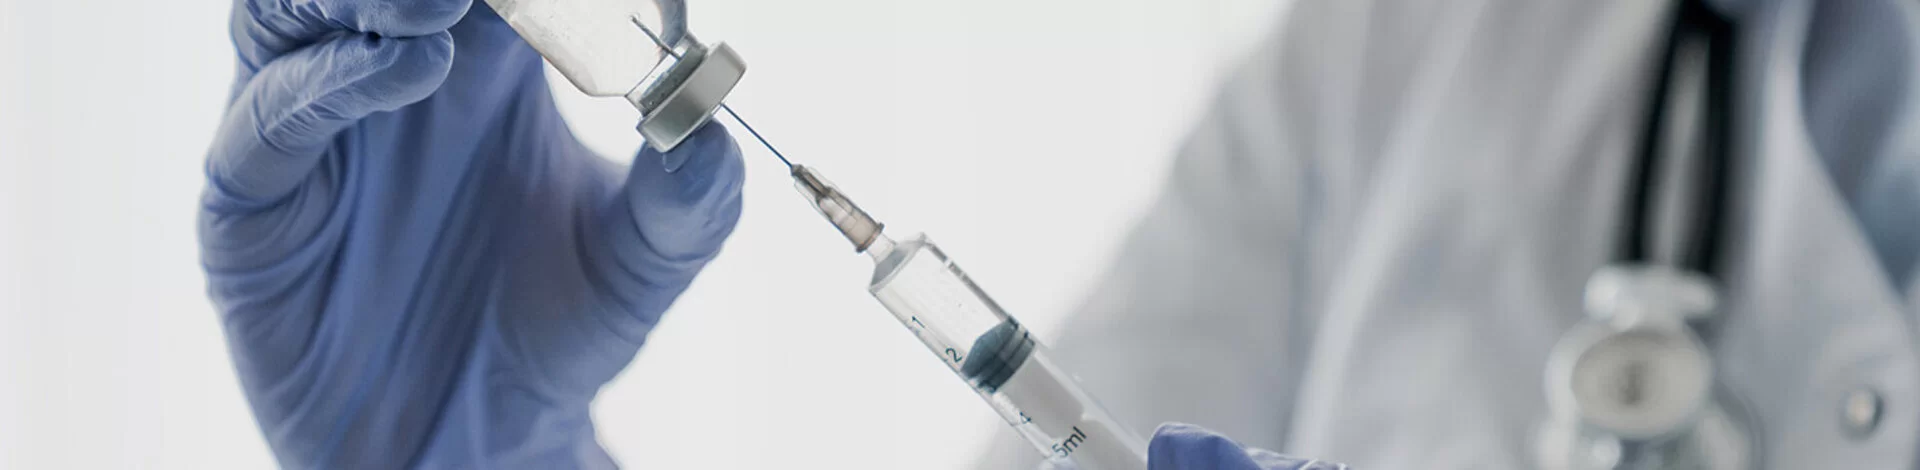 Ein Arzt präpariert eine Spritze mit dem Impfstoff für eine Schutzimpfung.